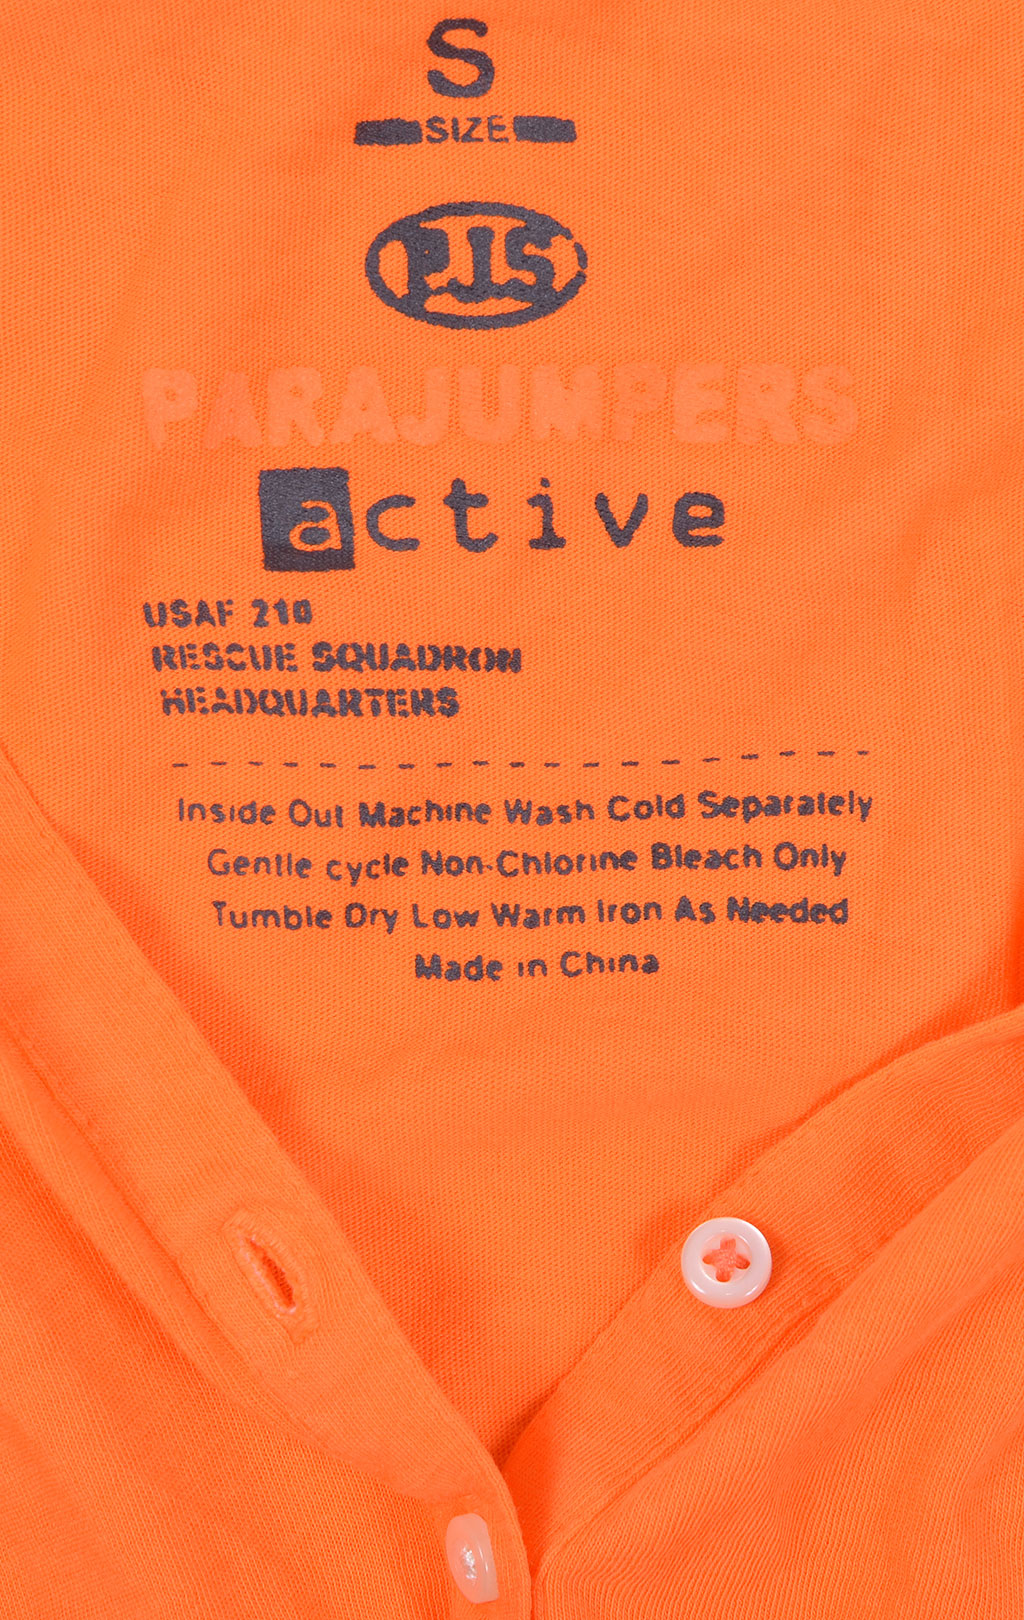 Женская футболка-поло PARAJUMPERS GINGER orange 